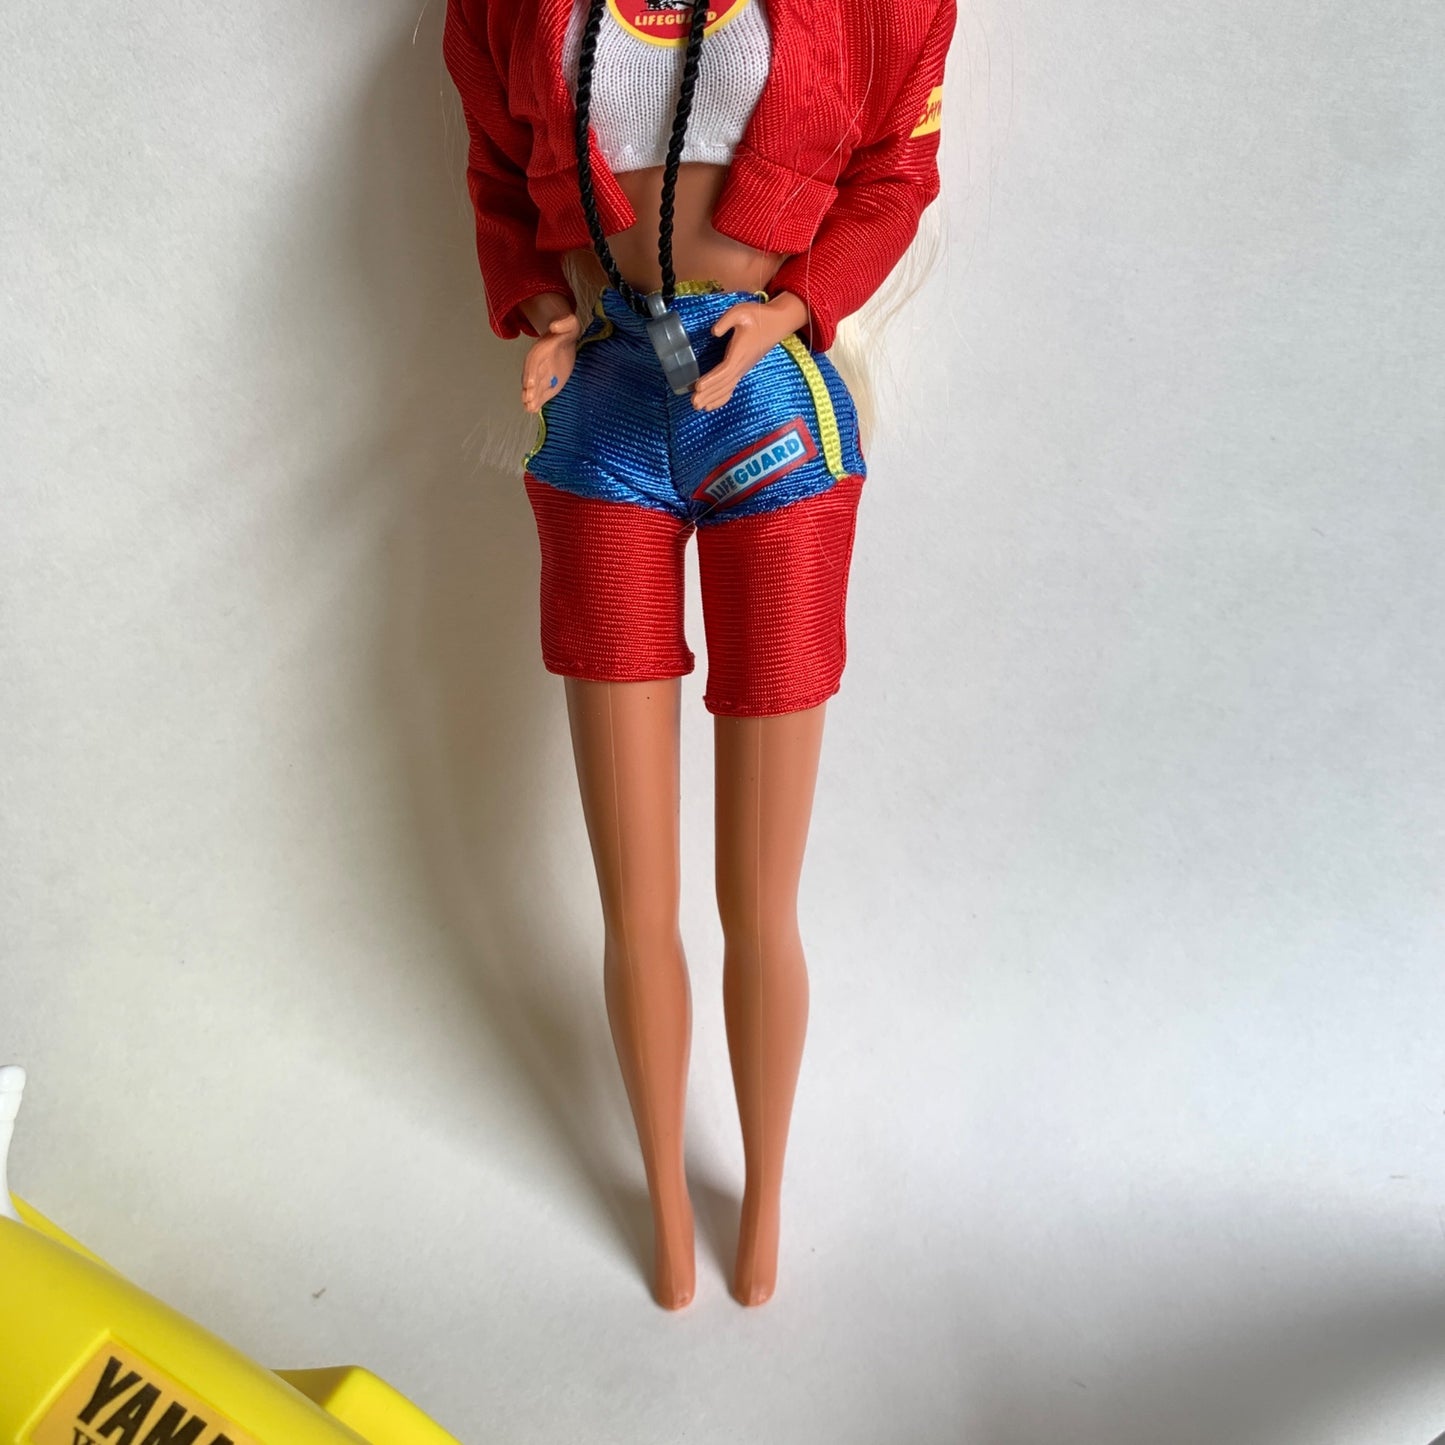 Mattel Barbie Baywatch Doll With WaveRunner Dolphin & Accessories